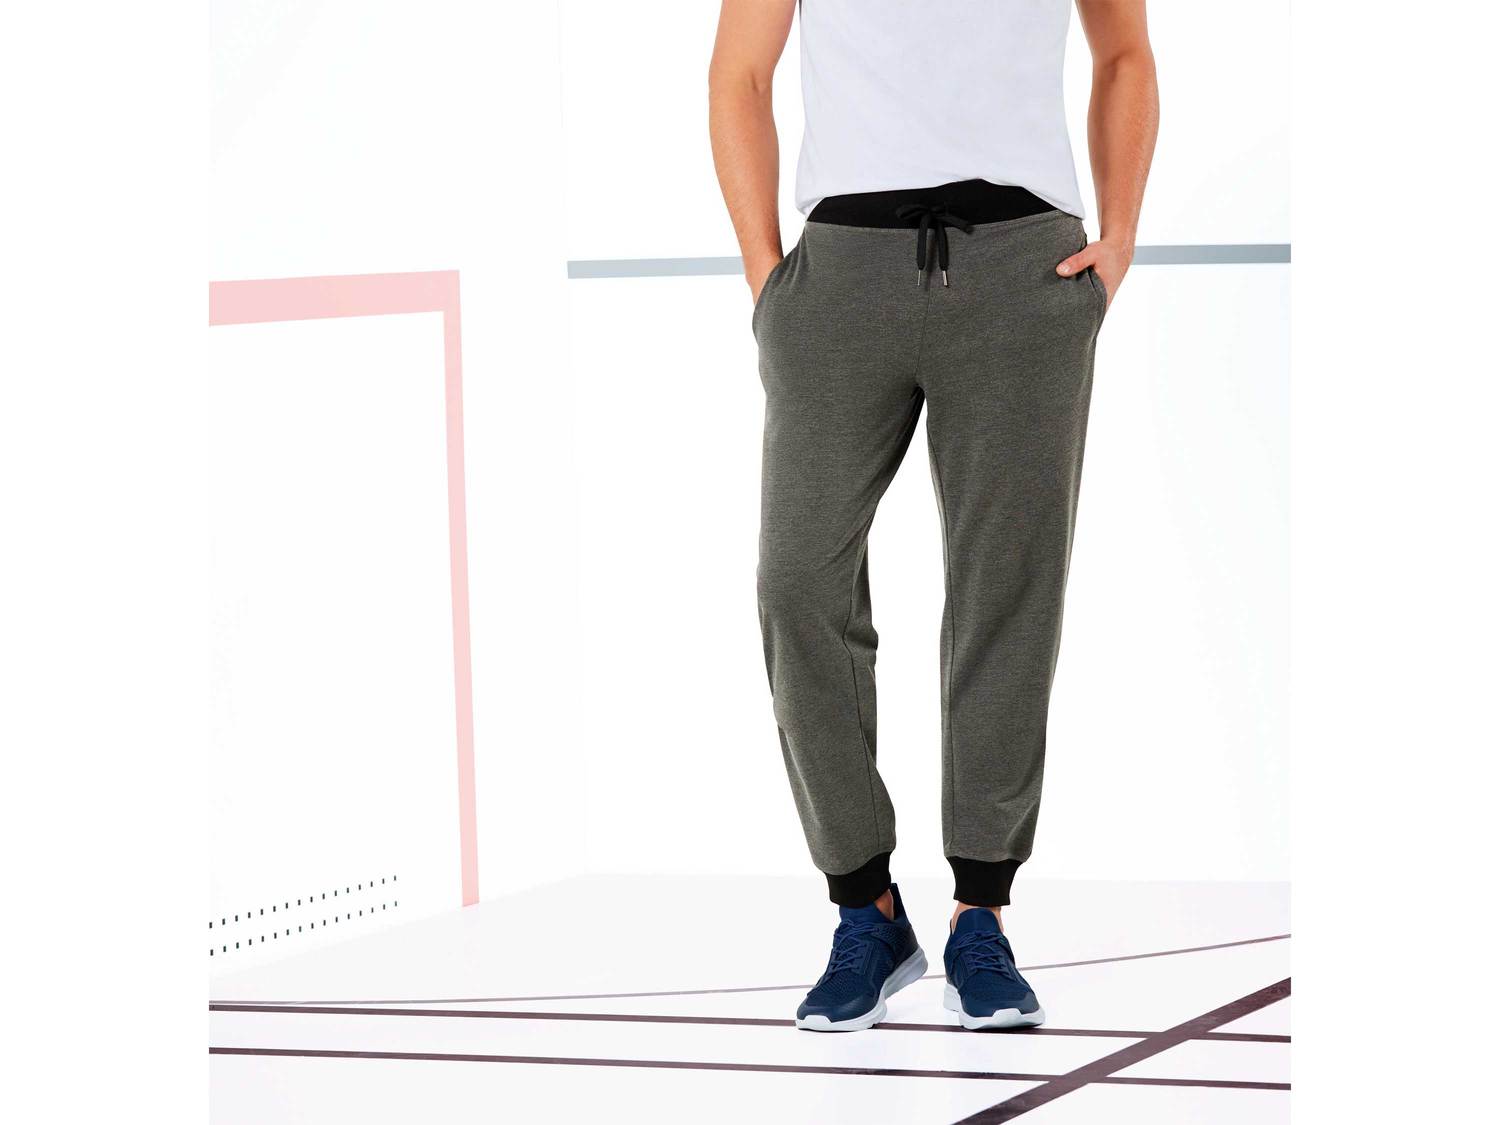 Spodnie dresowe Crivit, cena 27,00 PLN 
- rozmiary: M-XL
- elastyczny pas ze sznurkiem
- ...